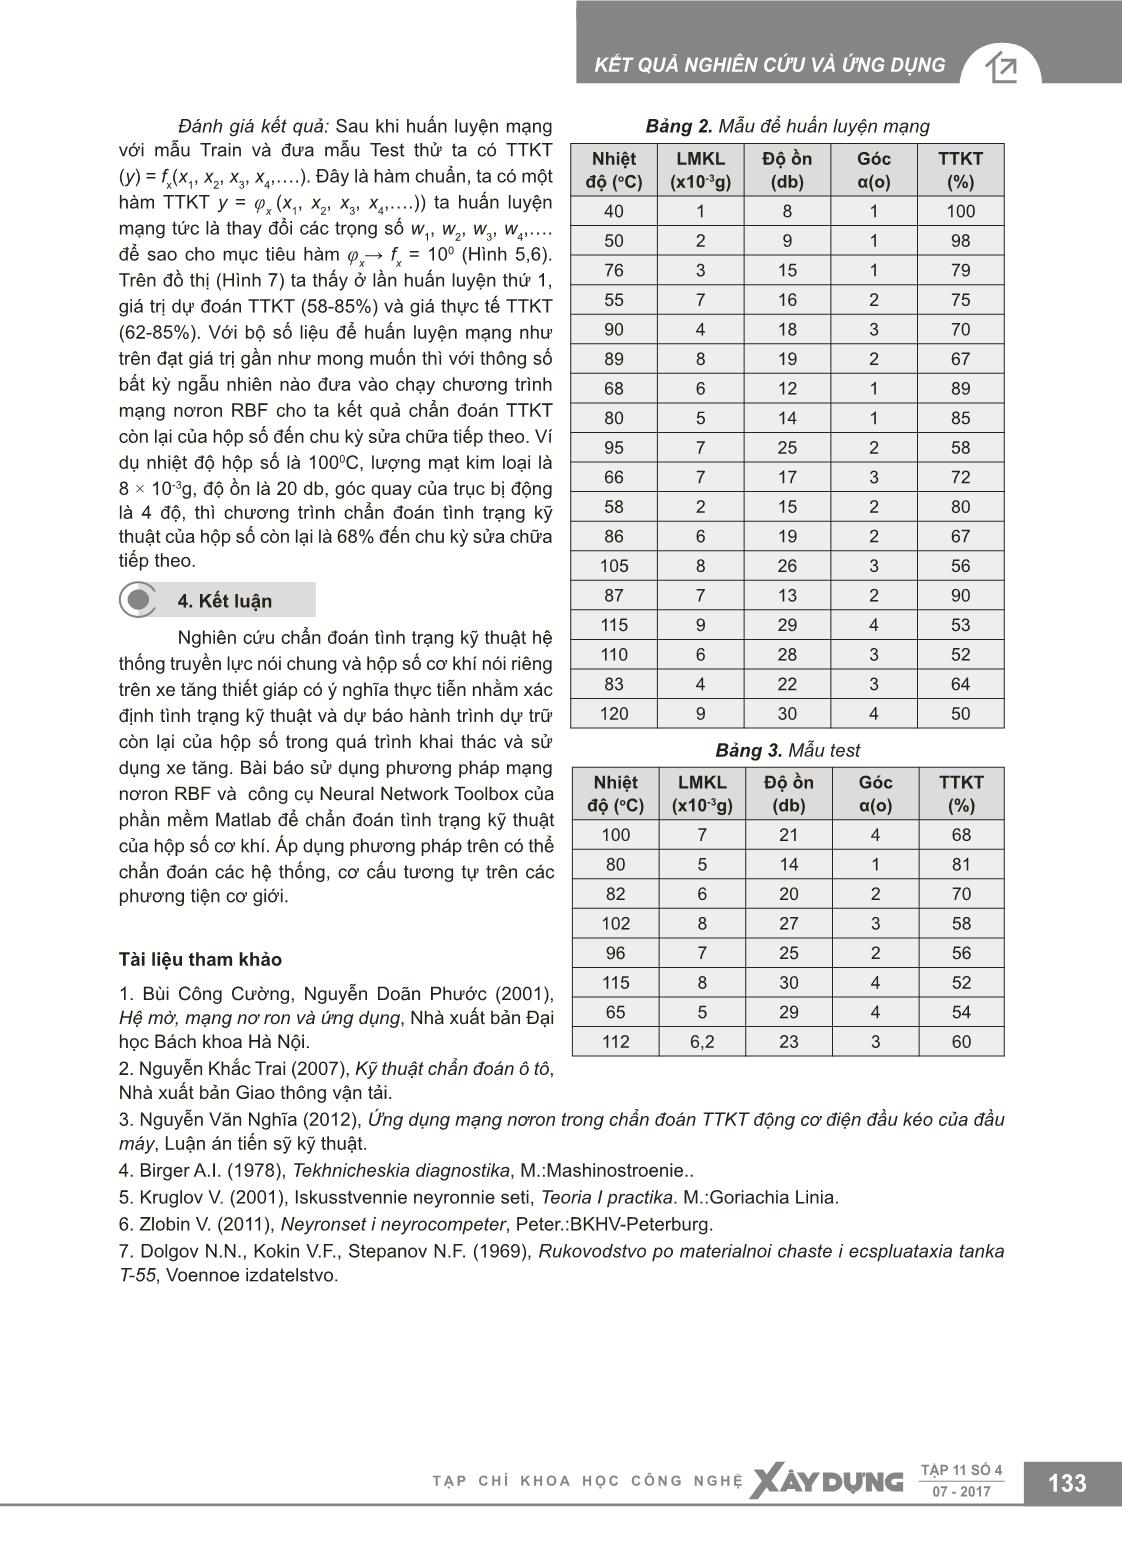 Chẩn đoán tình trạng kỹ thuật hộp số cơ khí trên cơ sở mạng nơron RBF trang 5